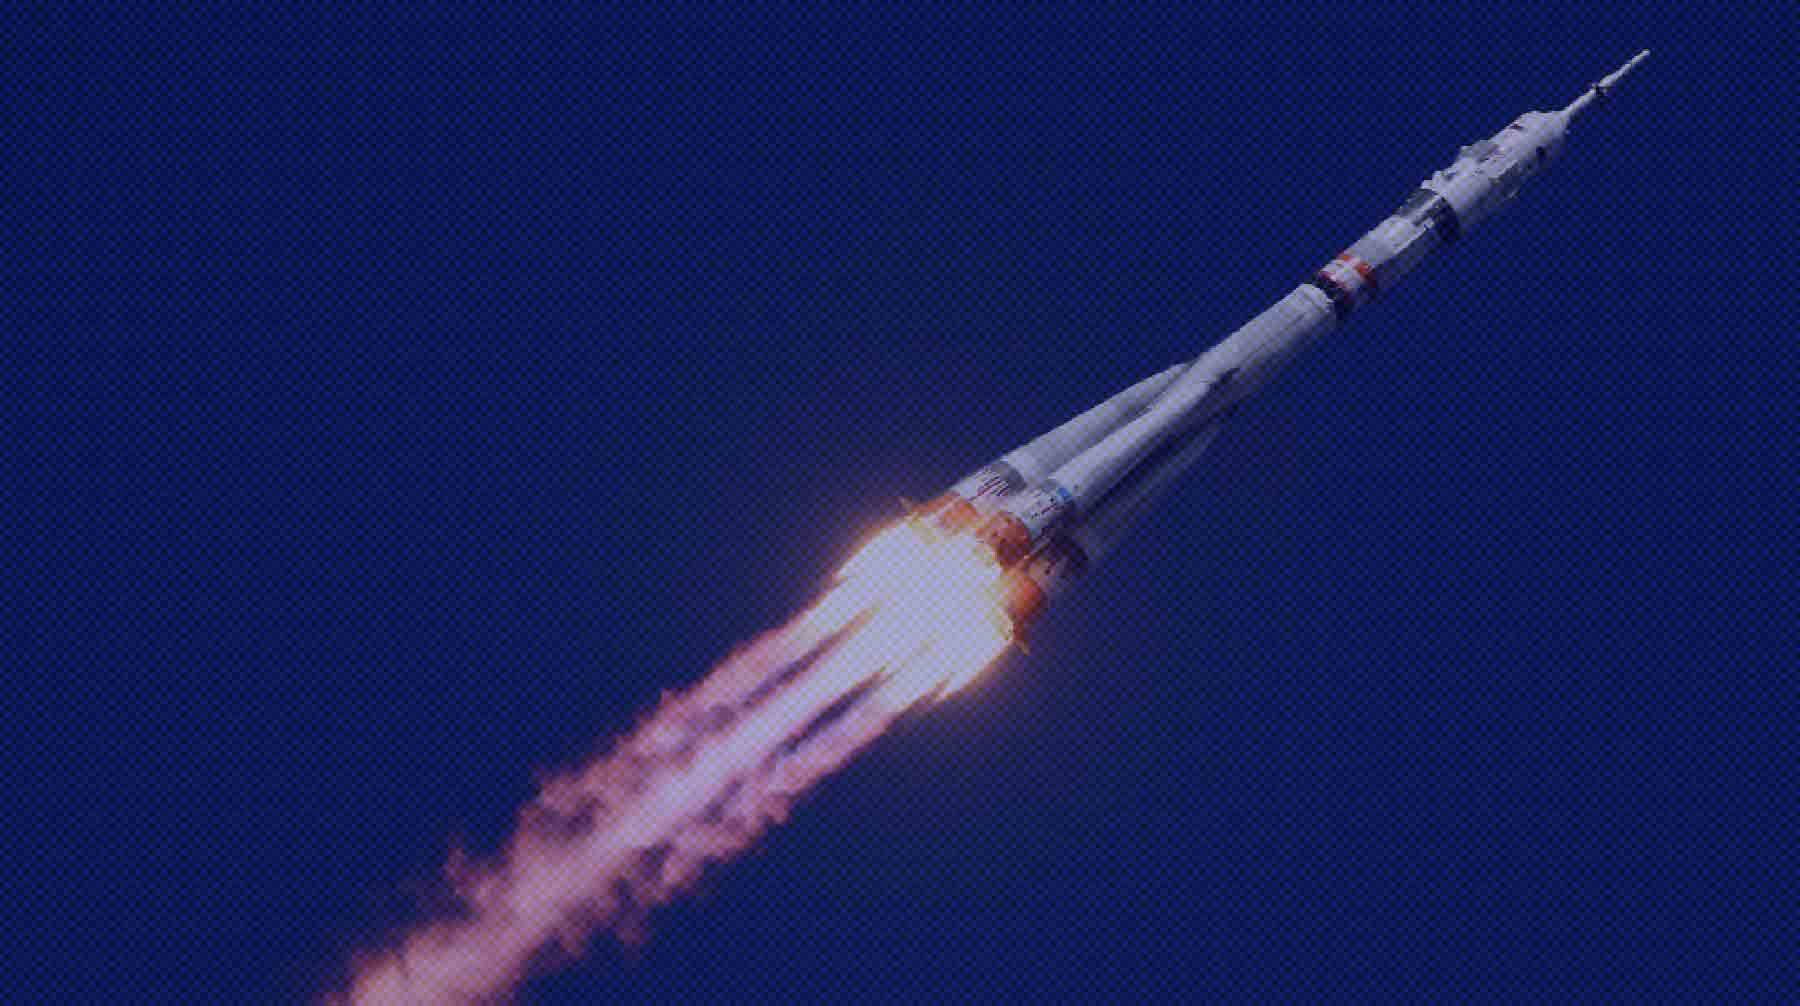 Съемочная группа собирается снять в невесомости первый в истории художественный фильм Запуск ракеты-носителя с космическим кораблем "Союз МС-19" со стартового комплекса "Восток" №31 космодрома Байконур.